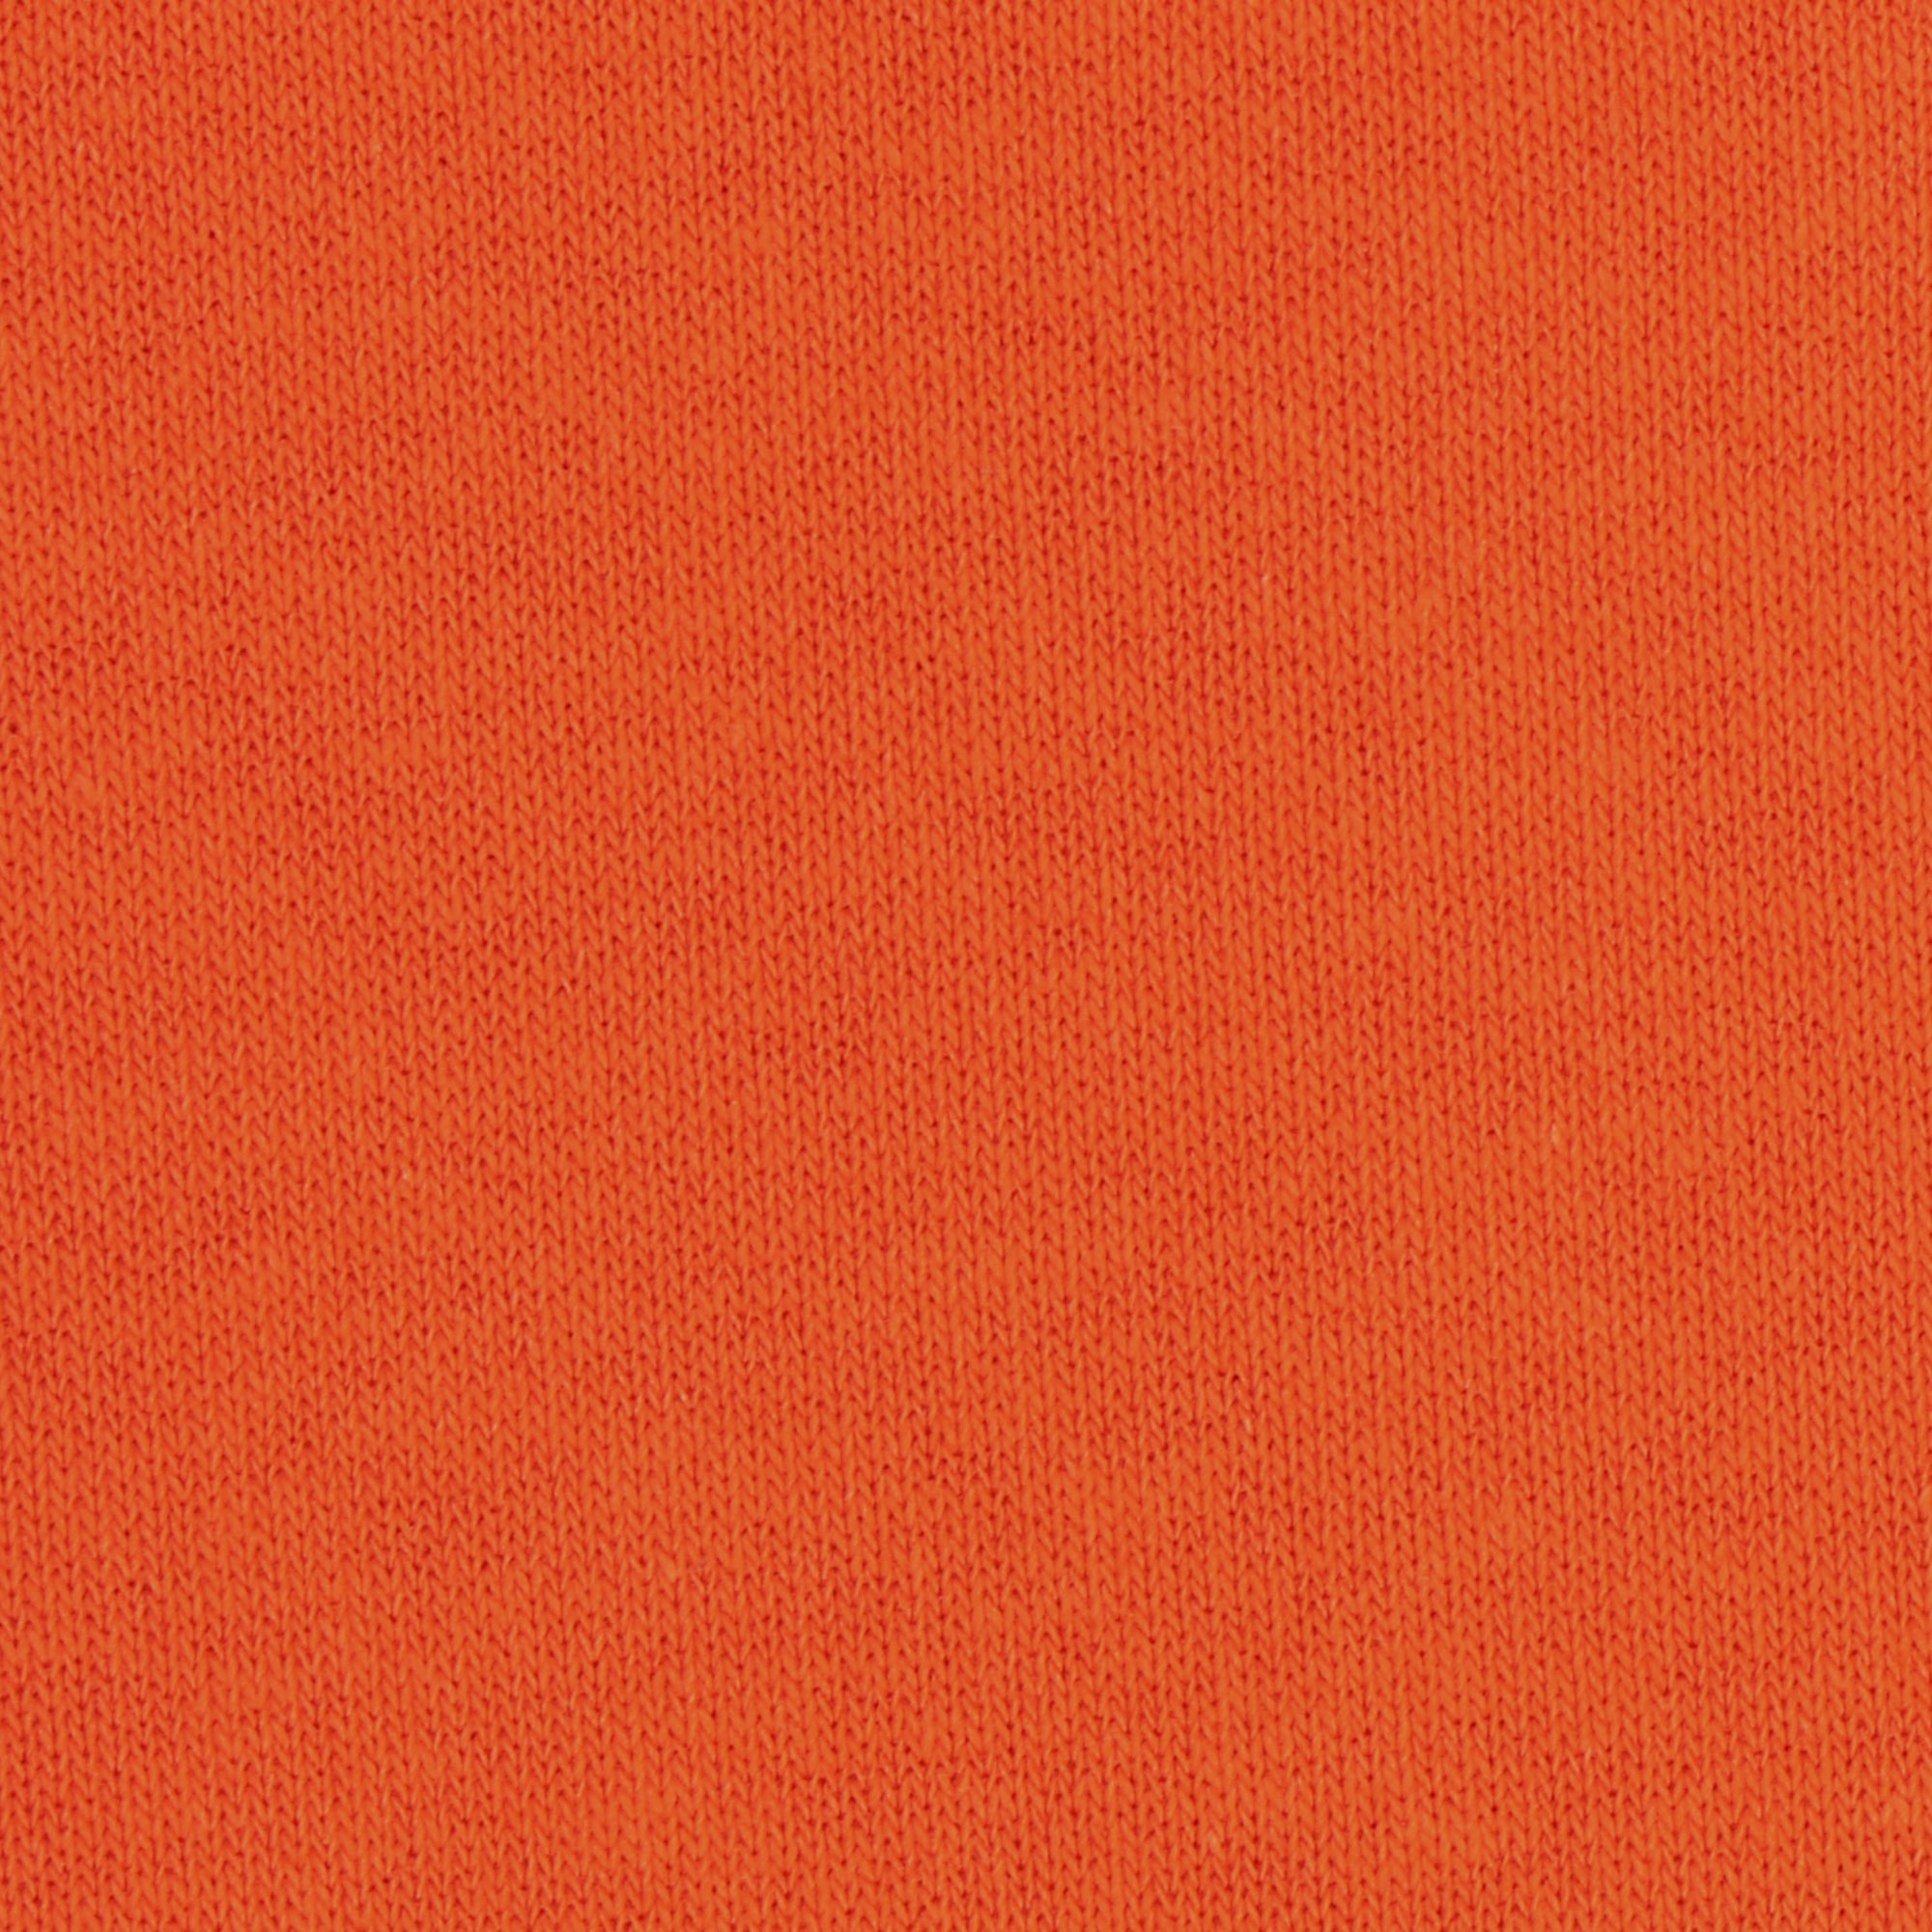 Худи Uzcotton Classic оранжевый, размер XXL - фото 5